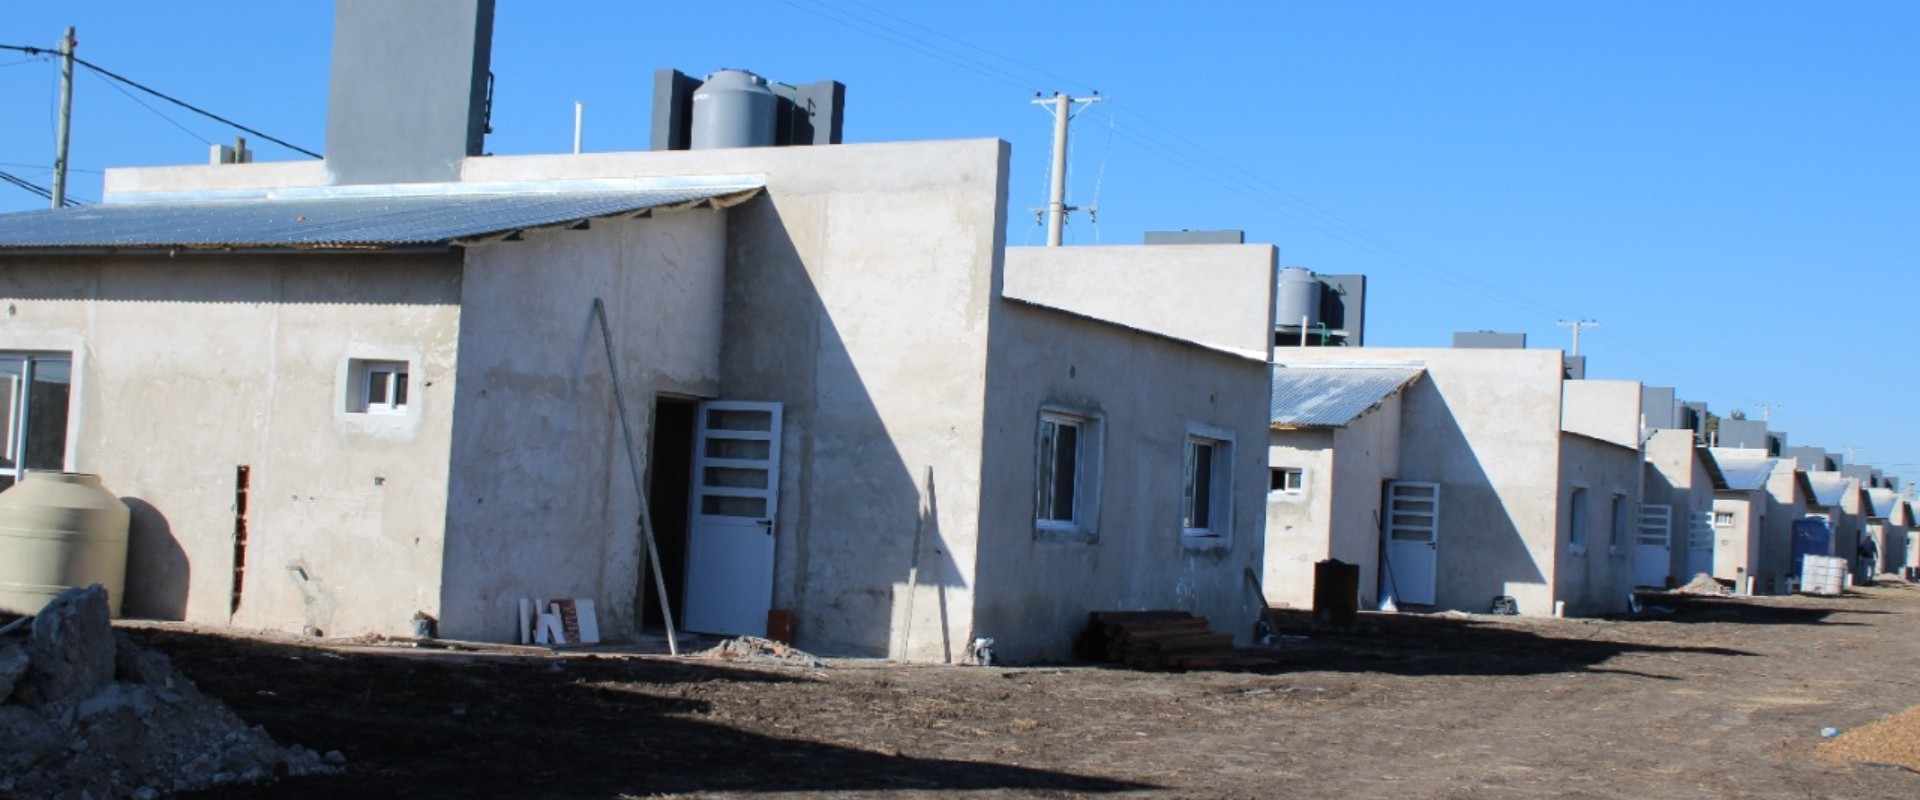 Se trabaja en la ejecución de 72 viviendas en Seguí financiadas por Nación y provincia